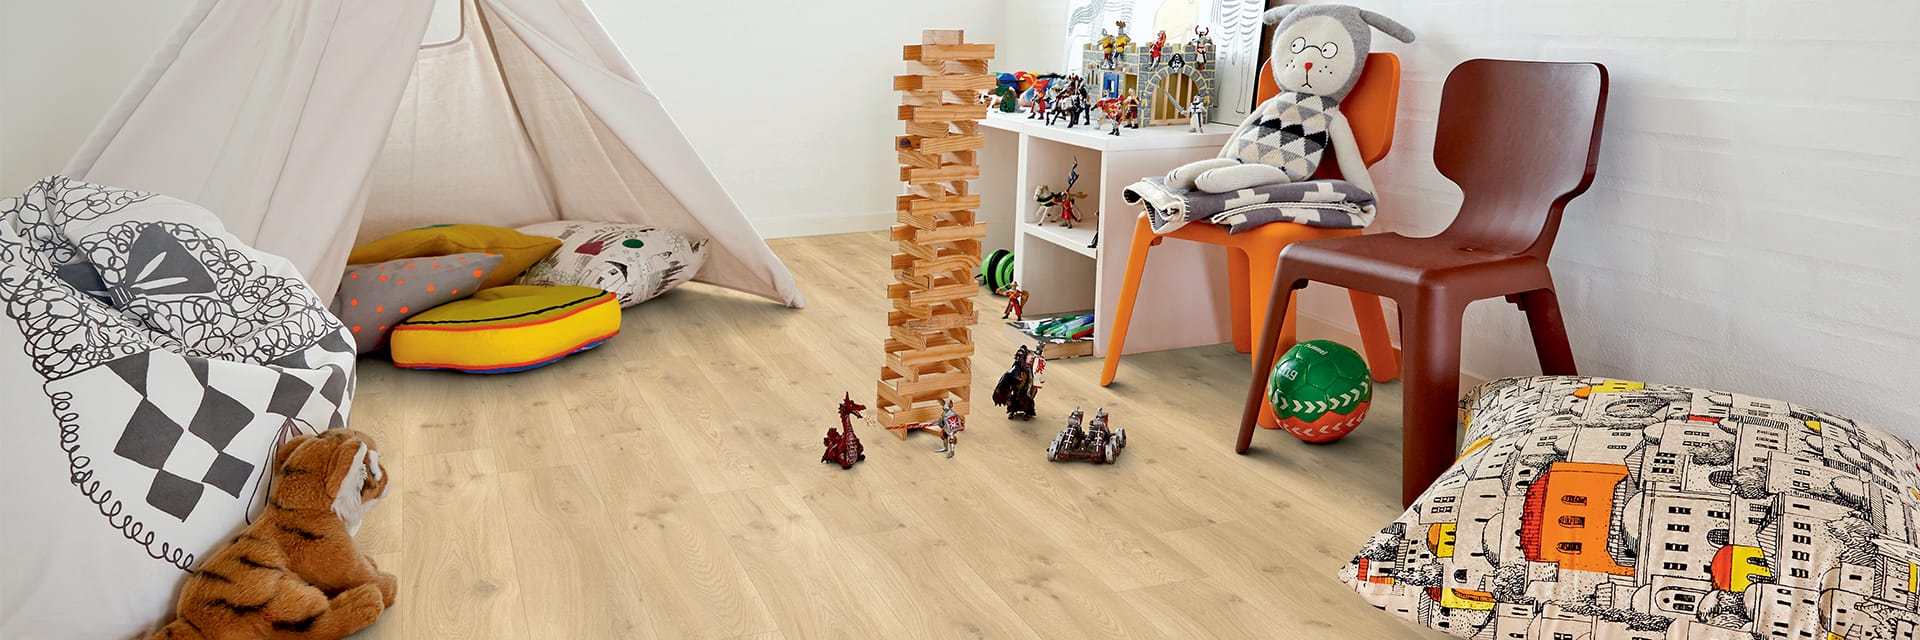 pokój dziecięcy z zabawkami leżącymi na beżowej podłodze winylowej